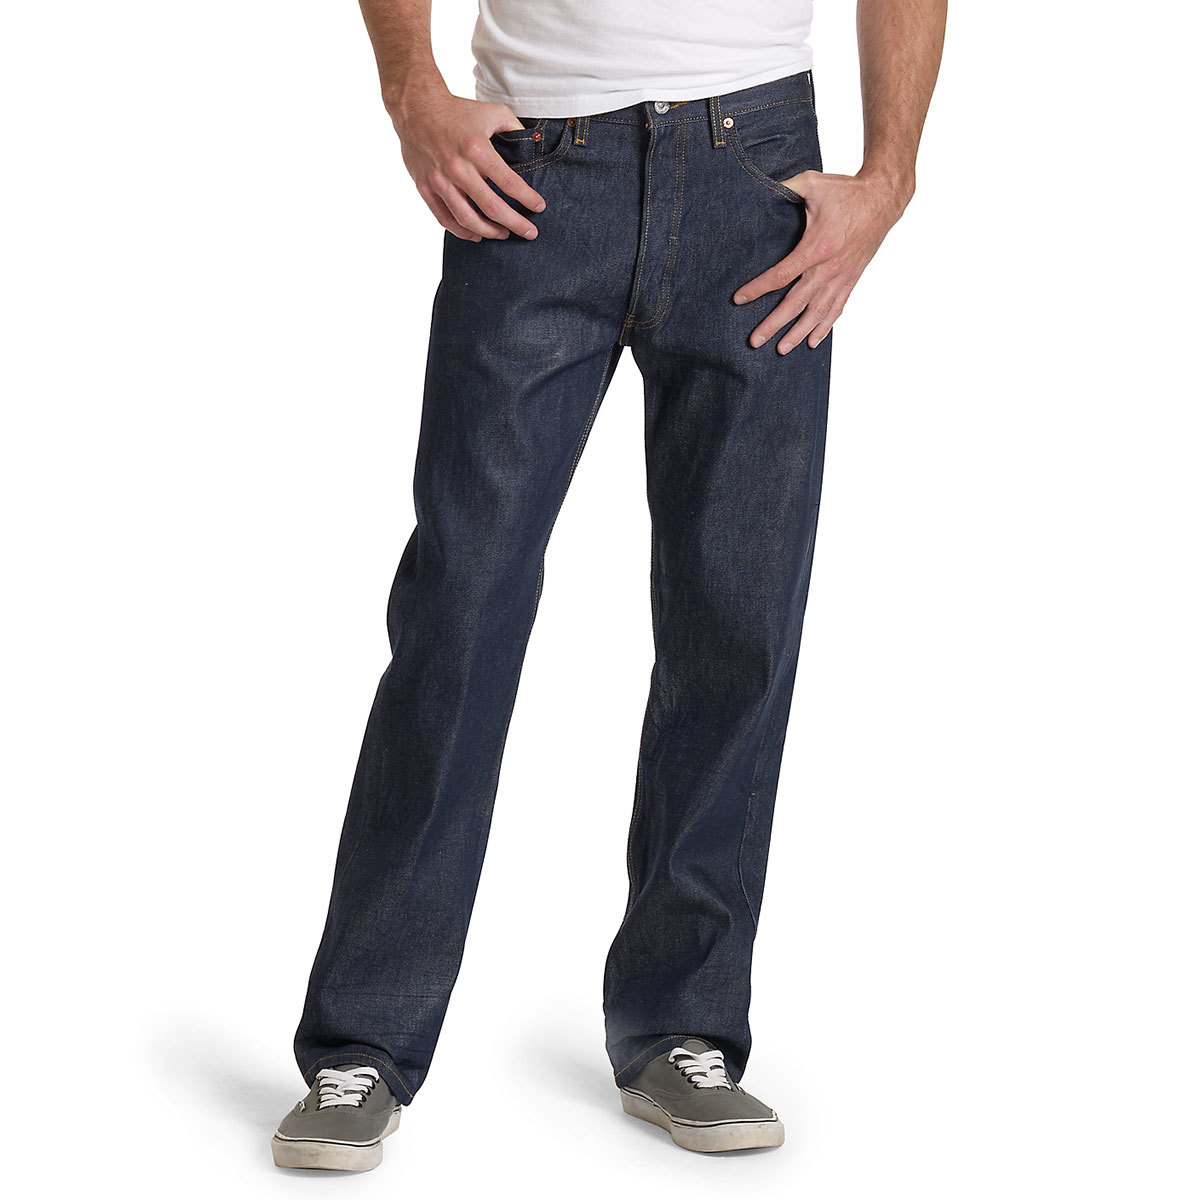 Levi's Men's 501 Original Fit Jeans - Blue, 33/36